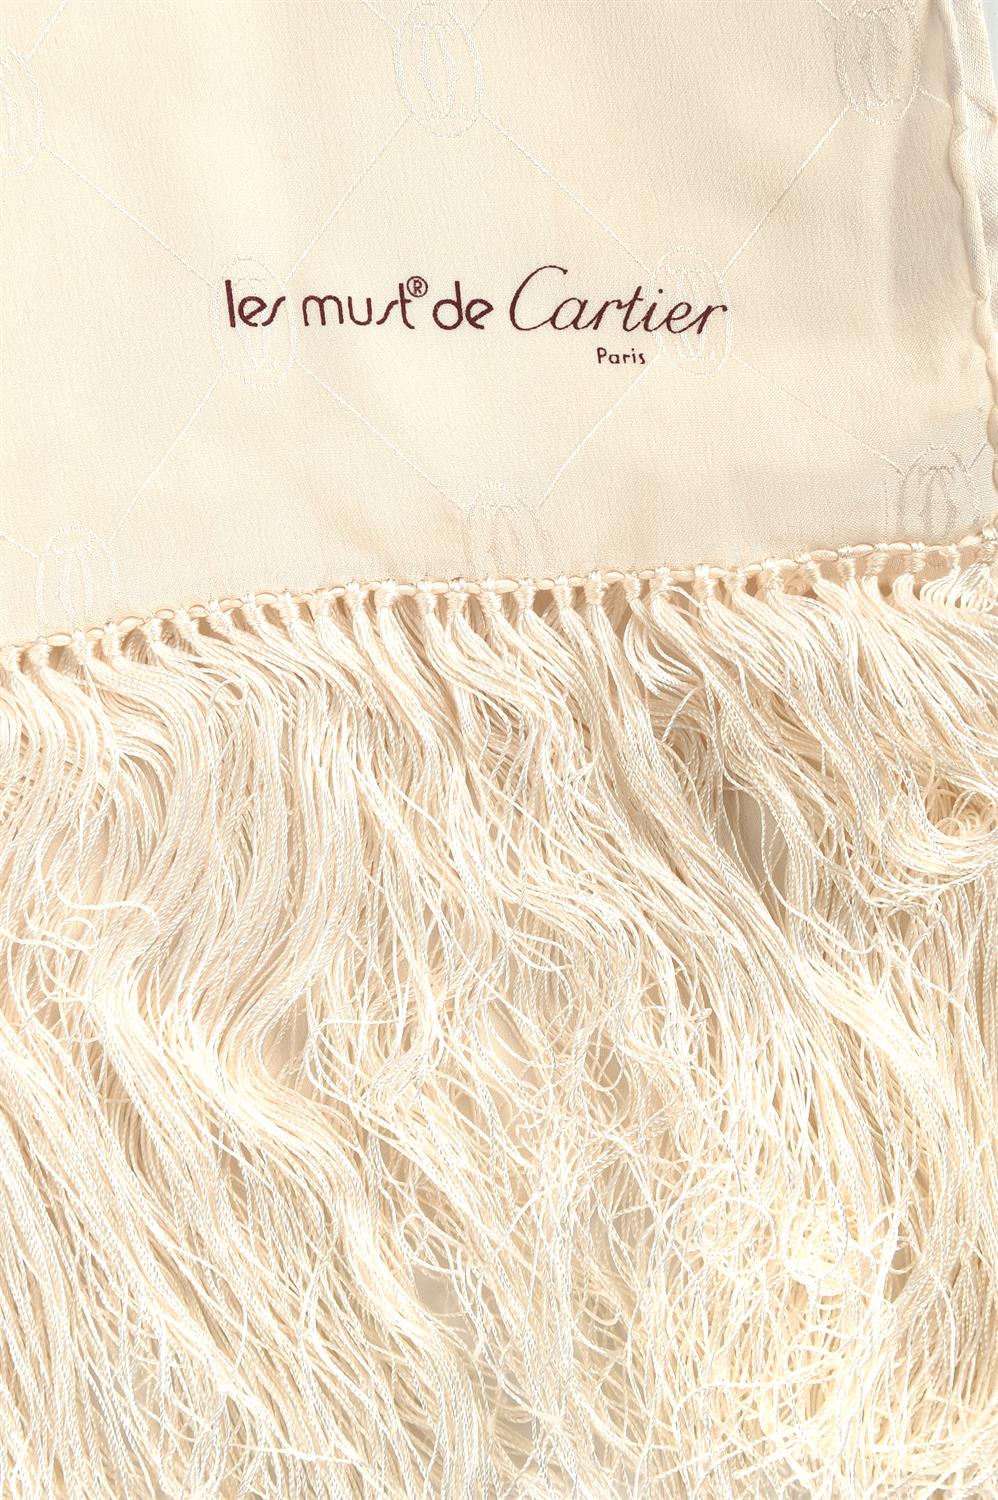 CARTIER LES MUST DE CARTIER gentleman's cream silk embossed evening scarf with fringe 90cm x 40cm - Image 2 of 3